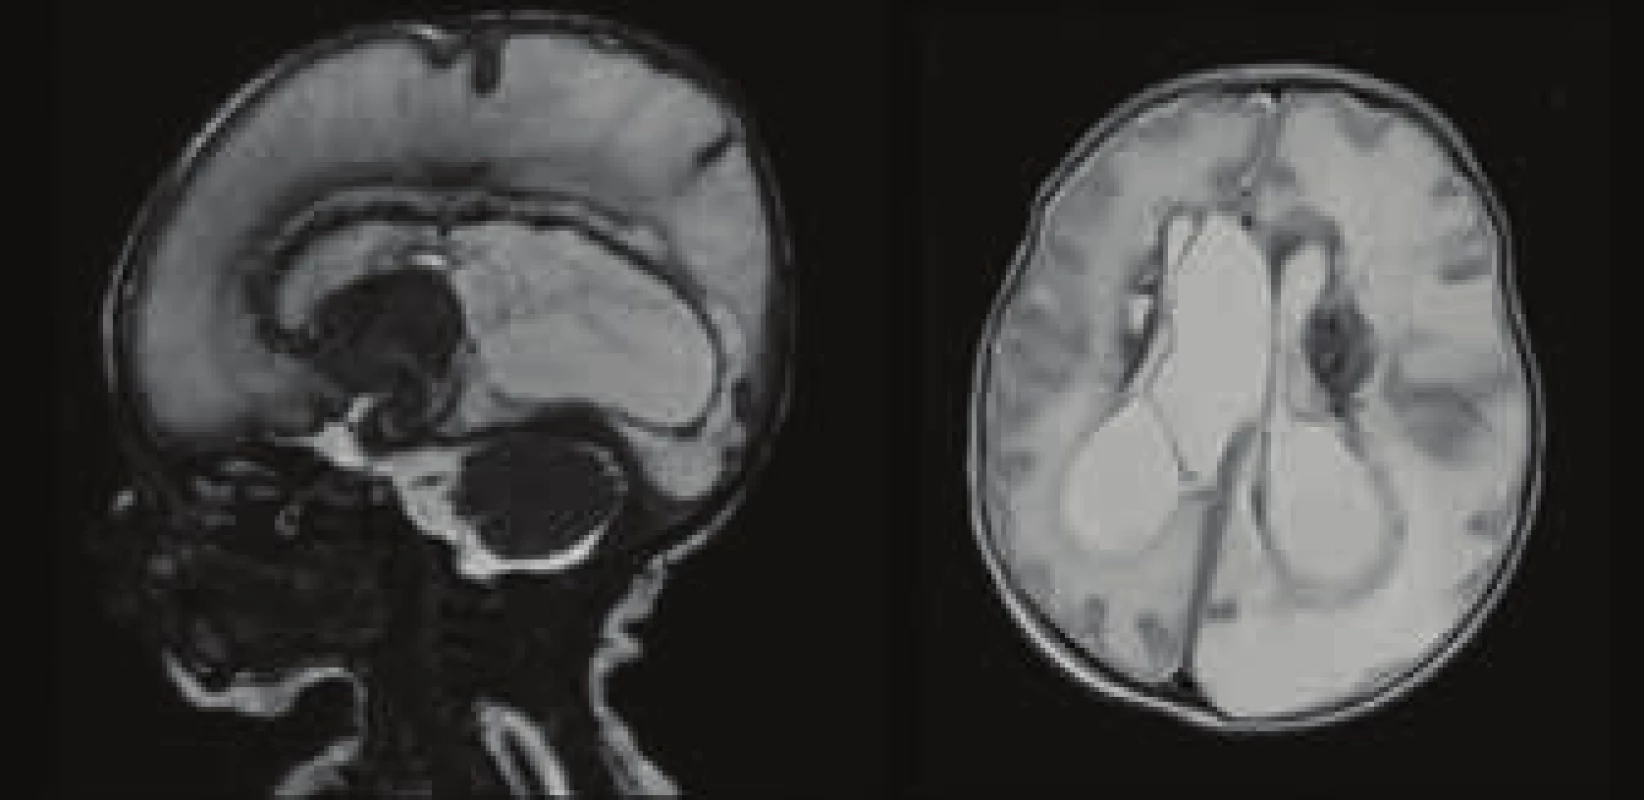 MRI vyšetření CNS – rozsáhlé ischemicko-pseudocystické
změny obou mozkových hemisfér, slupkovitý parenchym vlevo
a oboustranně zjevné periventrikulární krvácení.